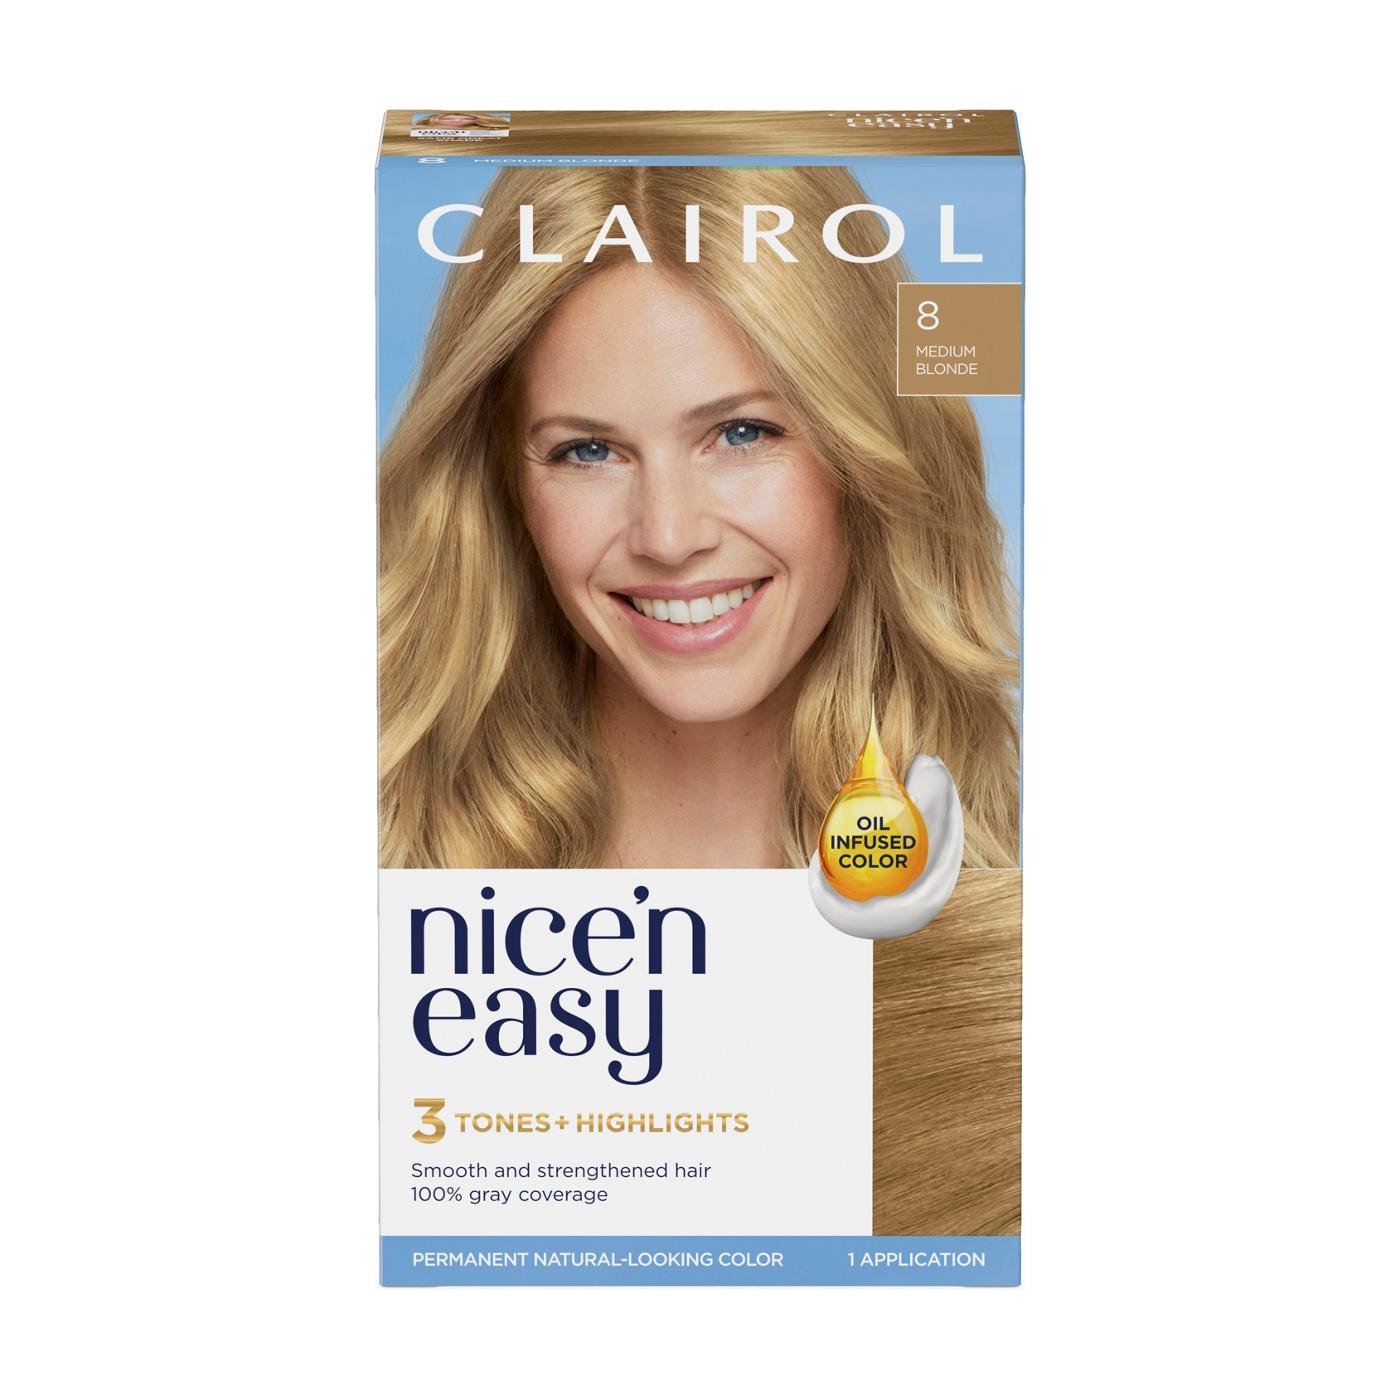 Clairol Nice 'N Easy Permanent Hair Color - 8 Medium Blonde; image 1 of 10